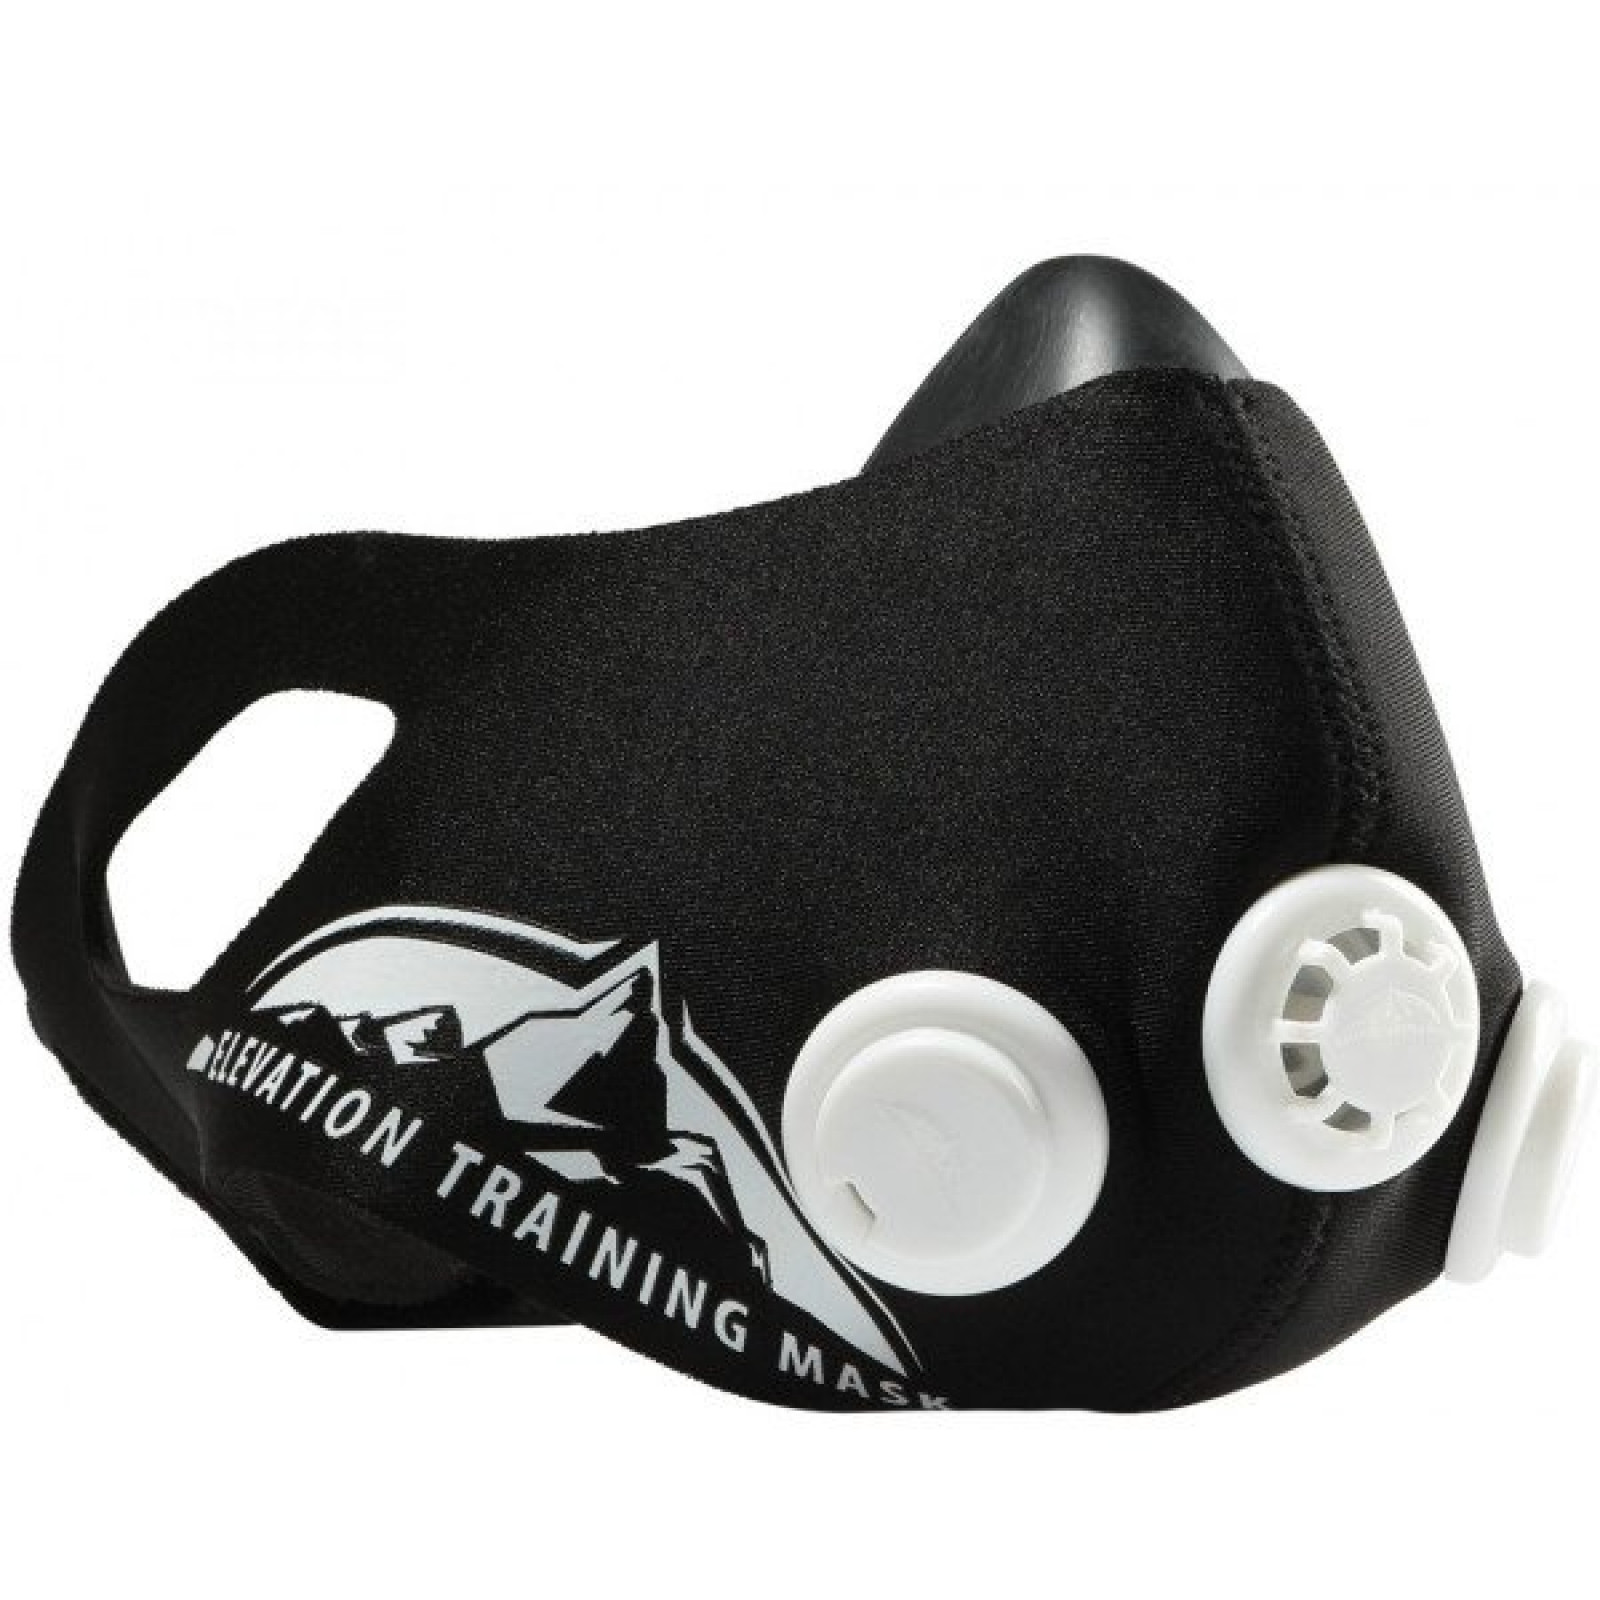 Тренажер дыхательный ограничитель дыхания Elevation Training Mask 836 размер S 149789